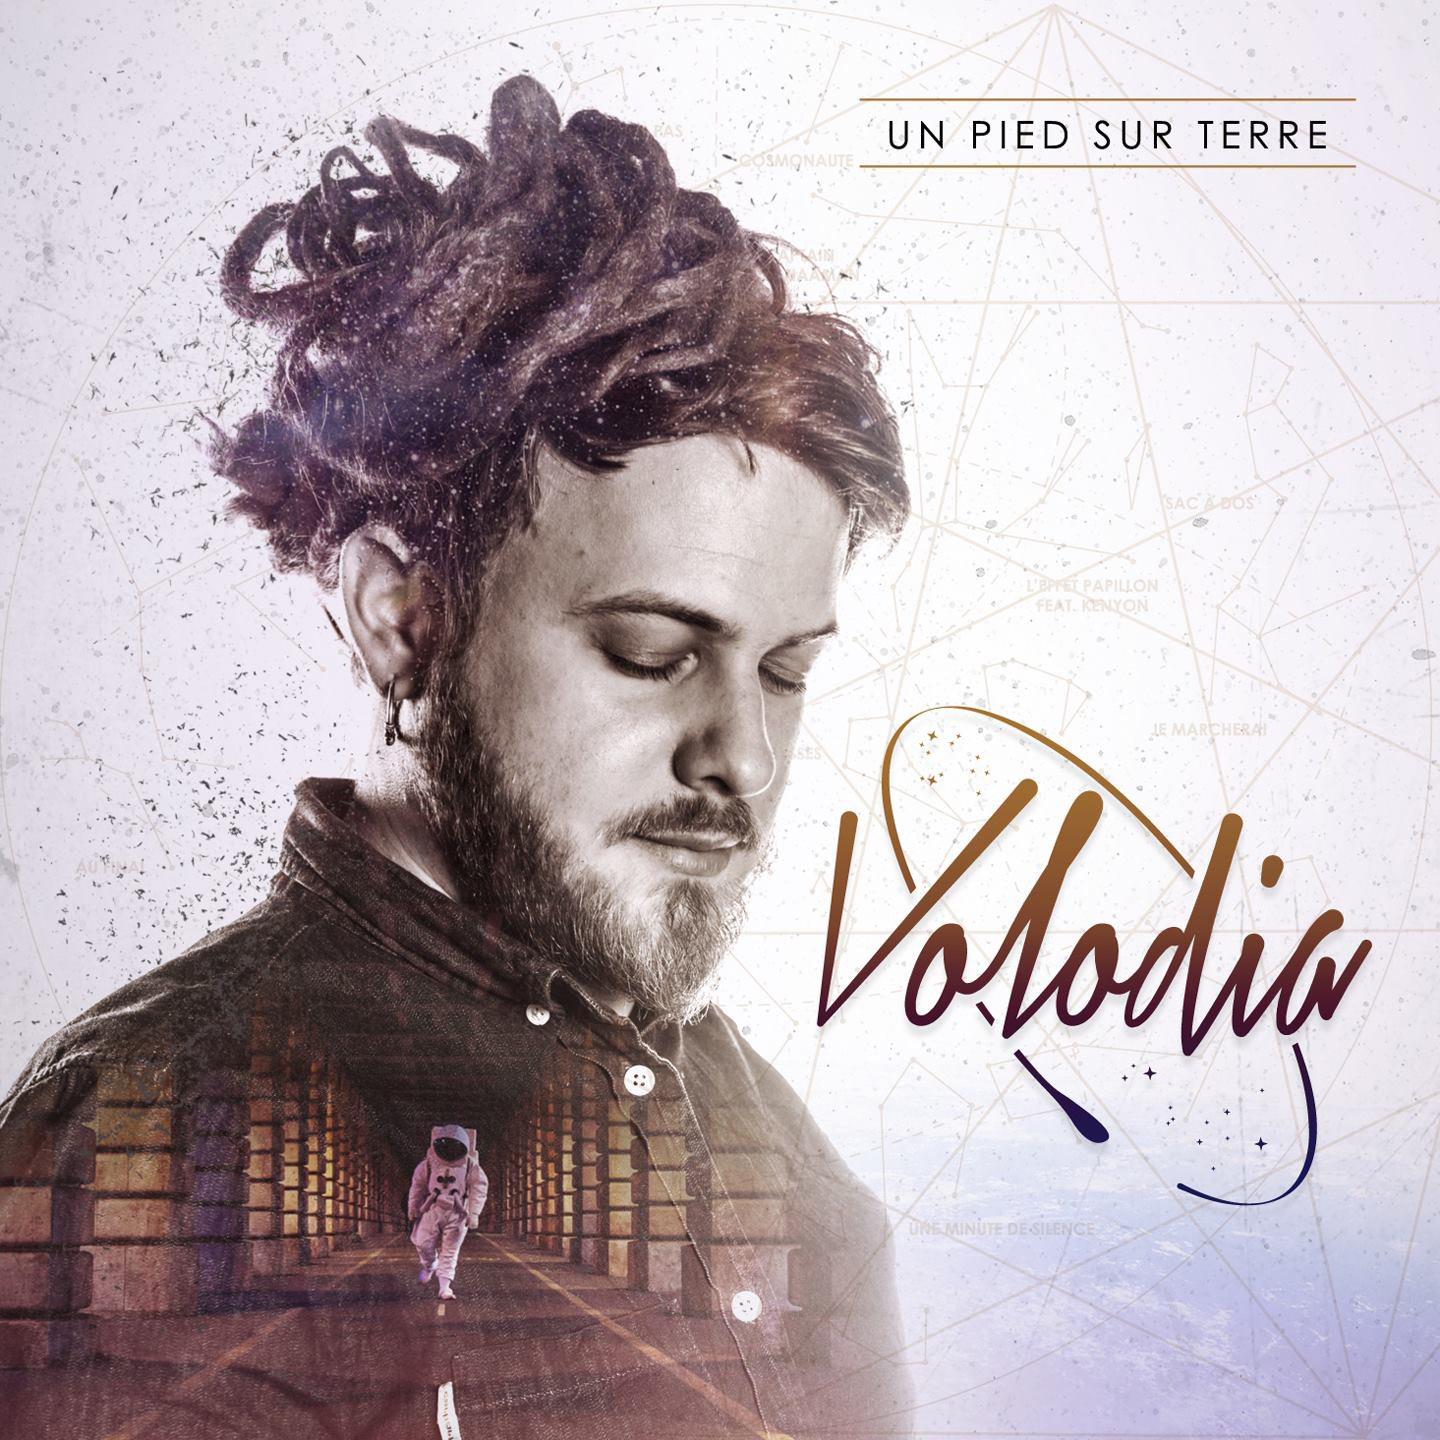 Cover de l'album de Volodia - un pied sur Terre. Réalisé par Loseou